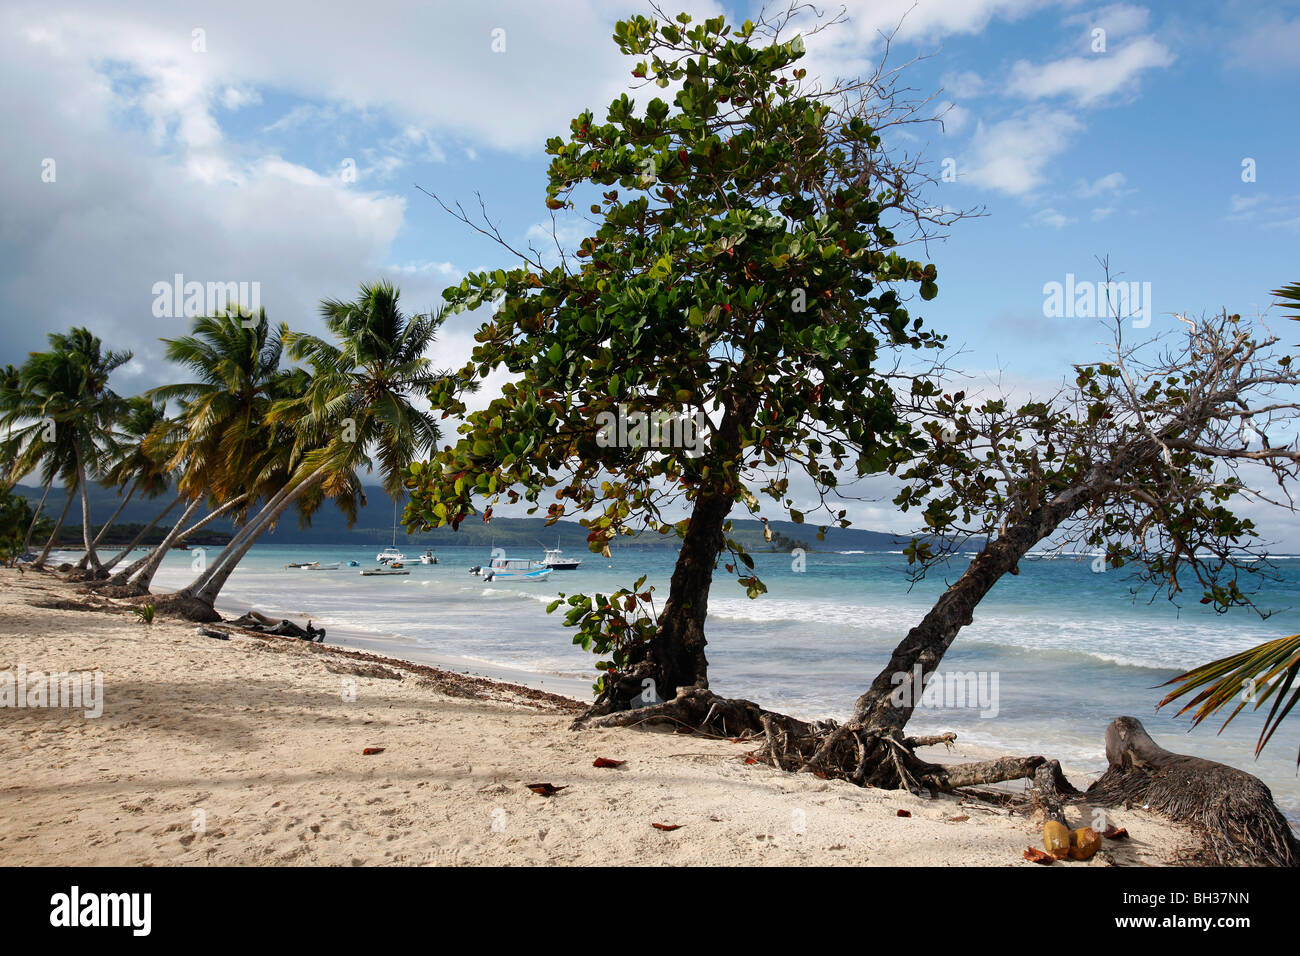 La plage de Las Galeras, péninsule de Samana, République Dominicaine Banque D'Images